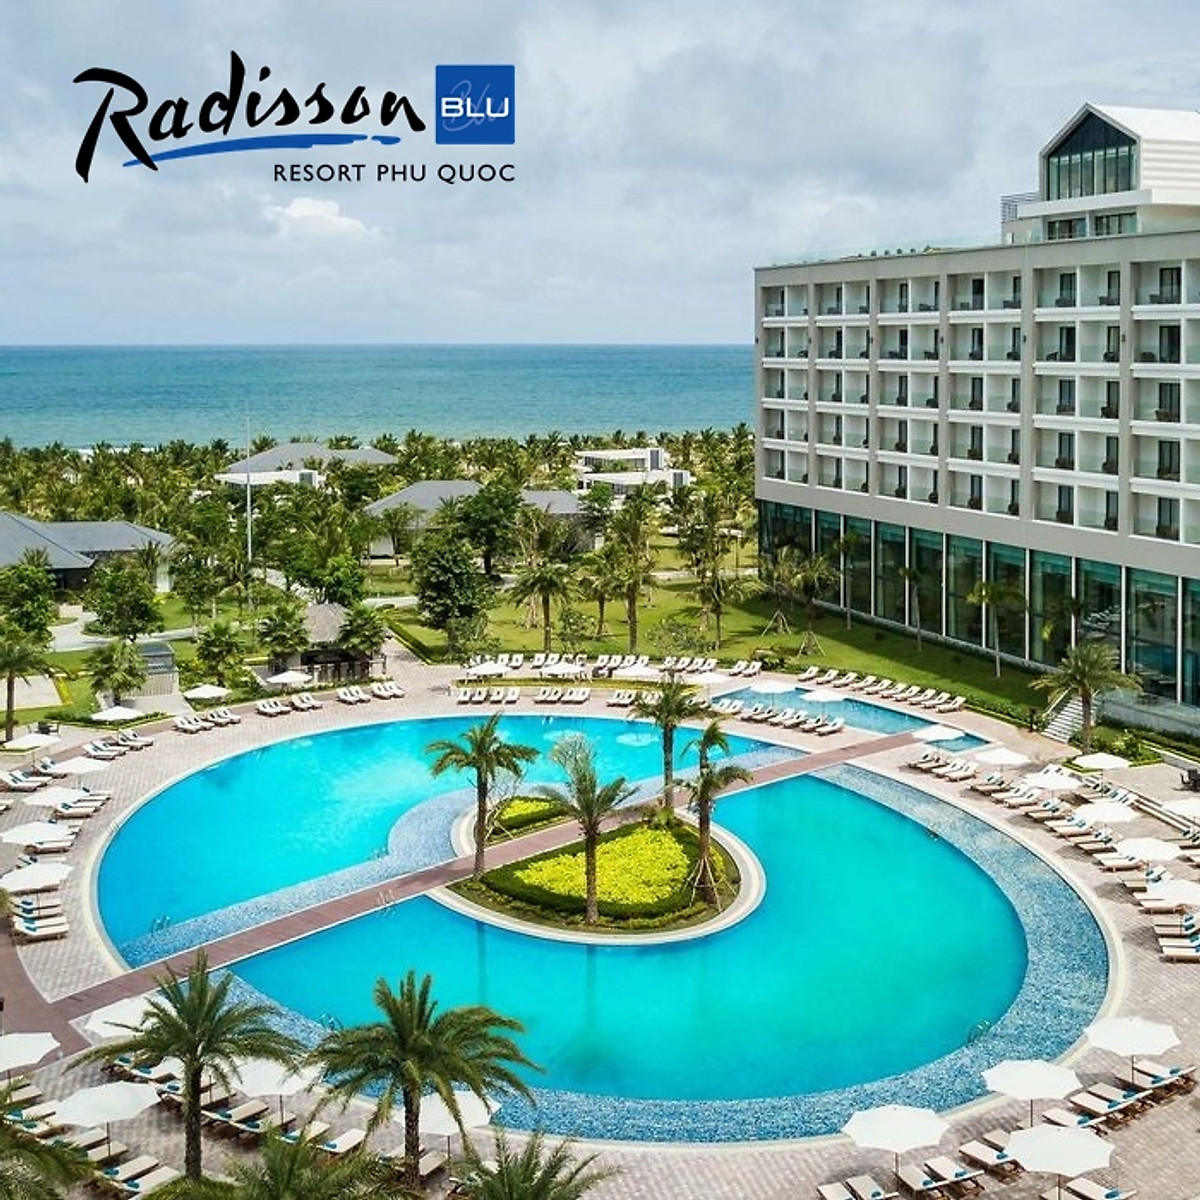 Radisson Blu Resort 5* Phú Quốc - Buffet Sáng, Xe Đón Tiễn Sân Bay, Hồ Bơi, Bãi Biển Riêng, Nằm Trong Tổ Hợp Vinpearl & Casino Phú Quốc